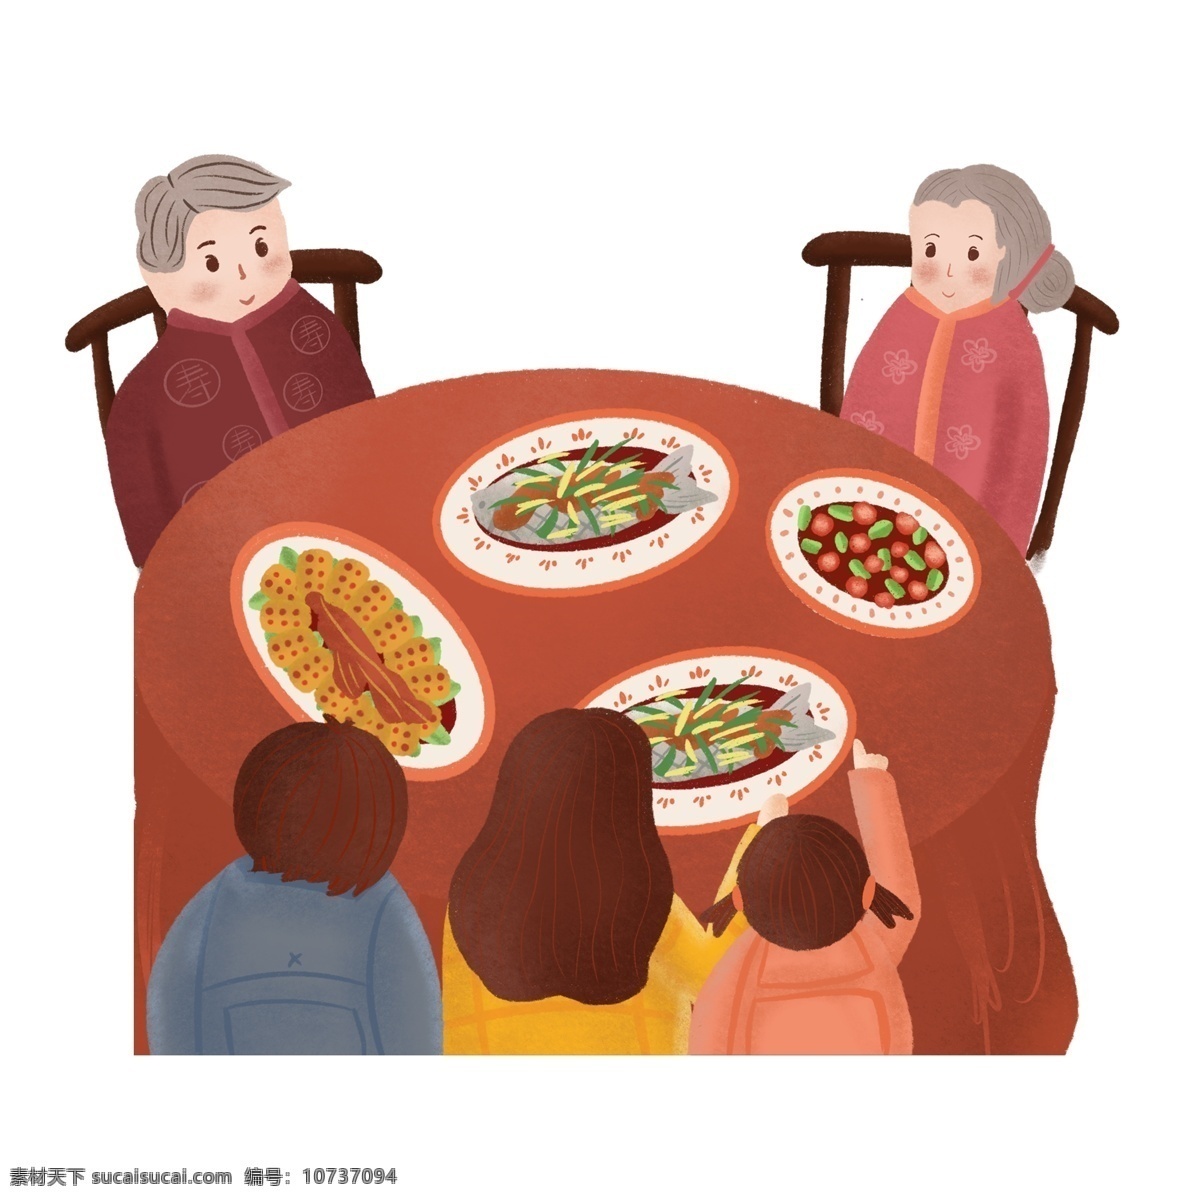 过年 全家人 吃饭 元素 免抠元素 透明素材 人物 吃年夜饭 过年回家